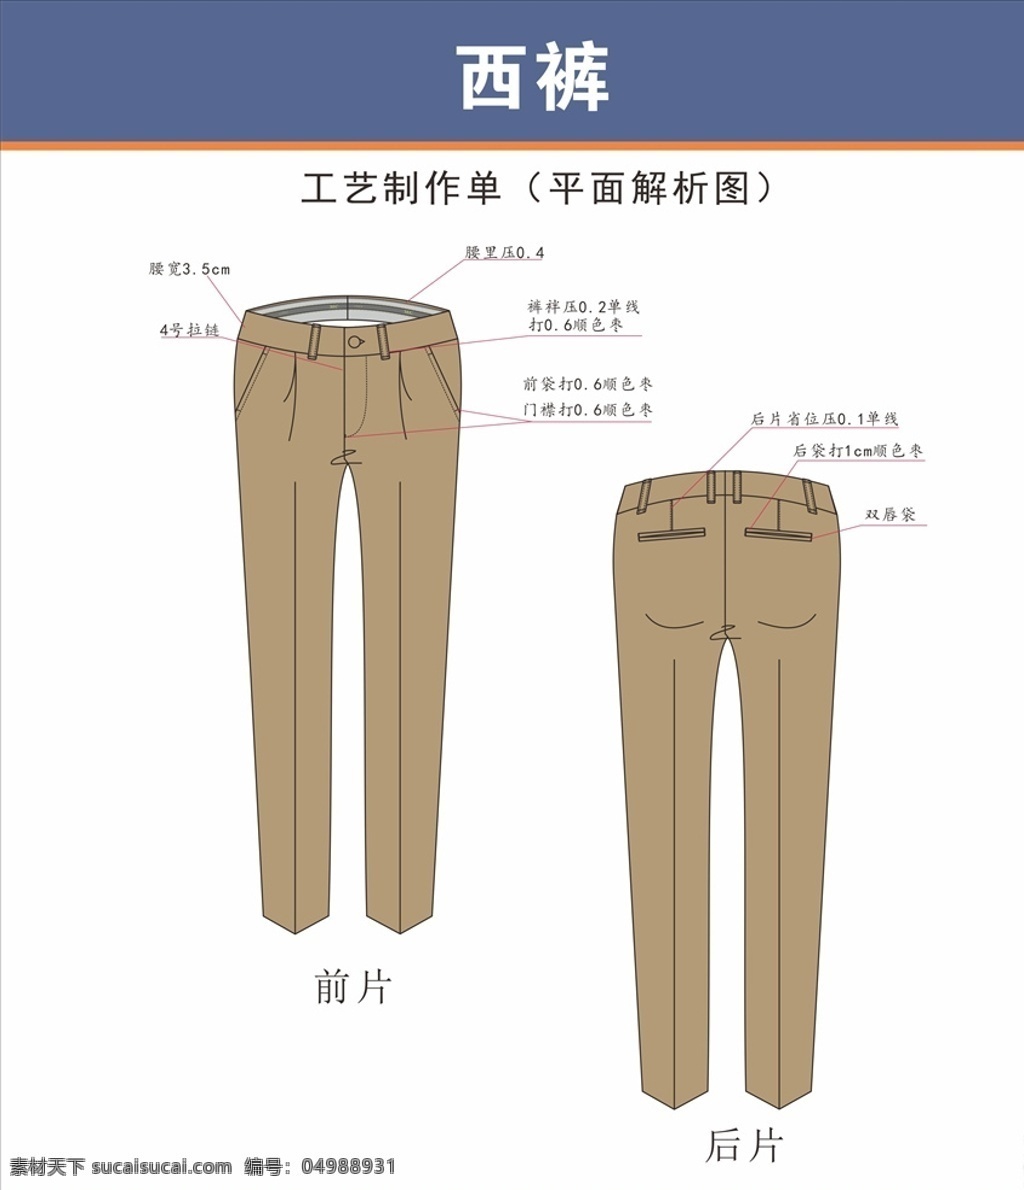 西裤设计稿 西裤 西裤设计 西裤版型 时装设计 服装版型 服装设计稿 服装设计